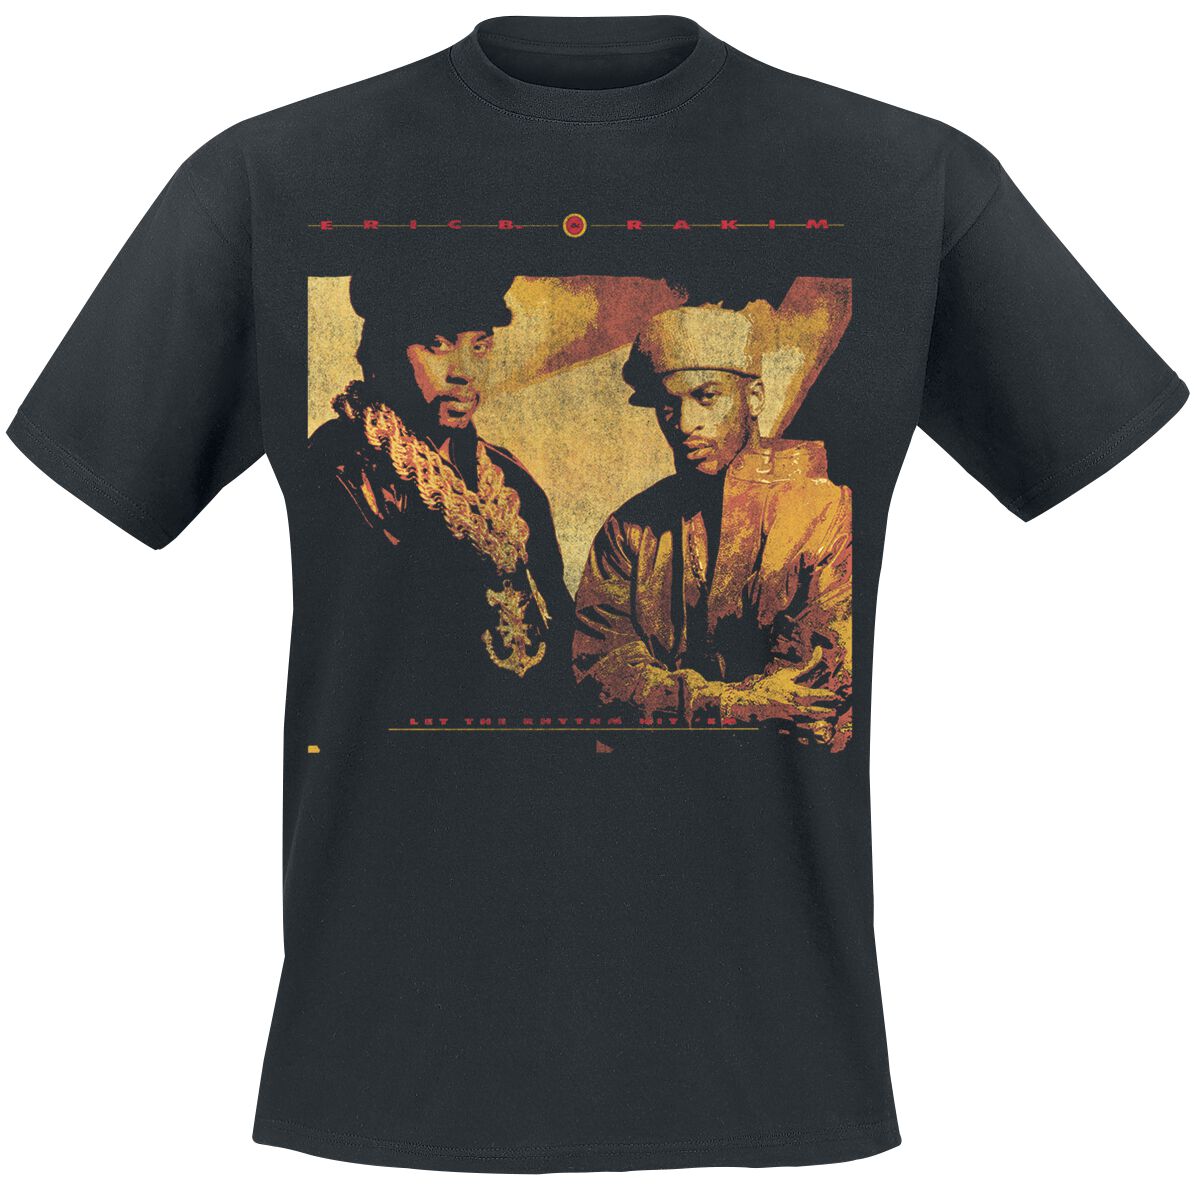 Eric B. & Rakim T-Shirt - Rhythm Hit Em - S bis 3XL - für Männer - Größe S - schwarz  - Lizenziertes Merchandise!